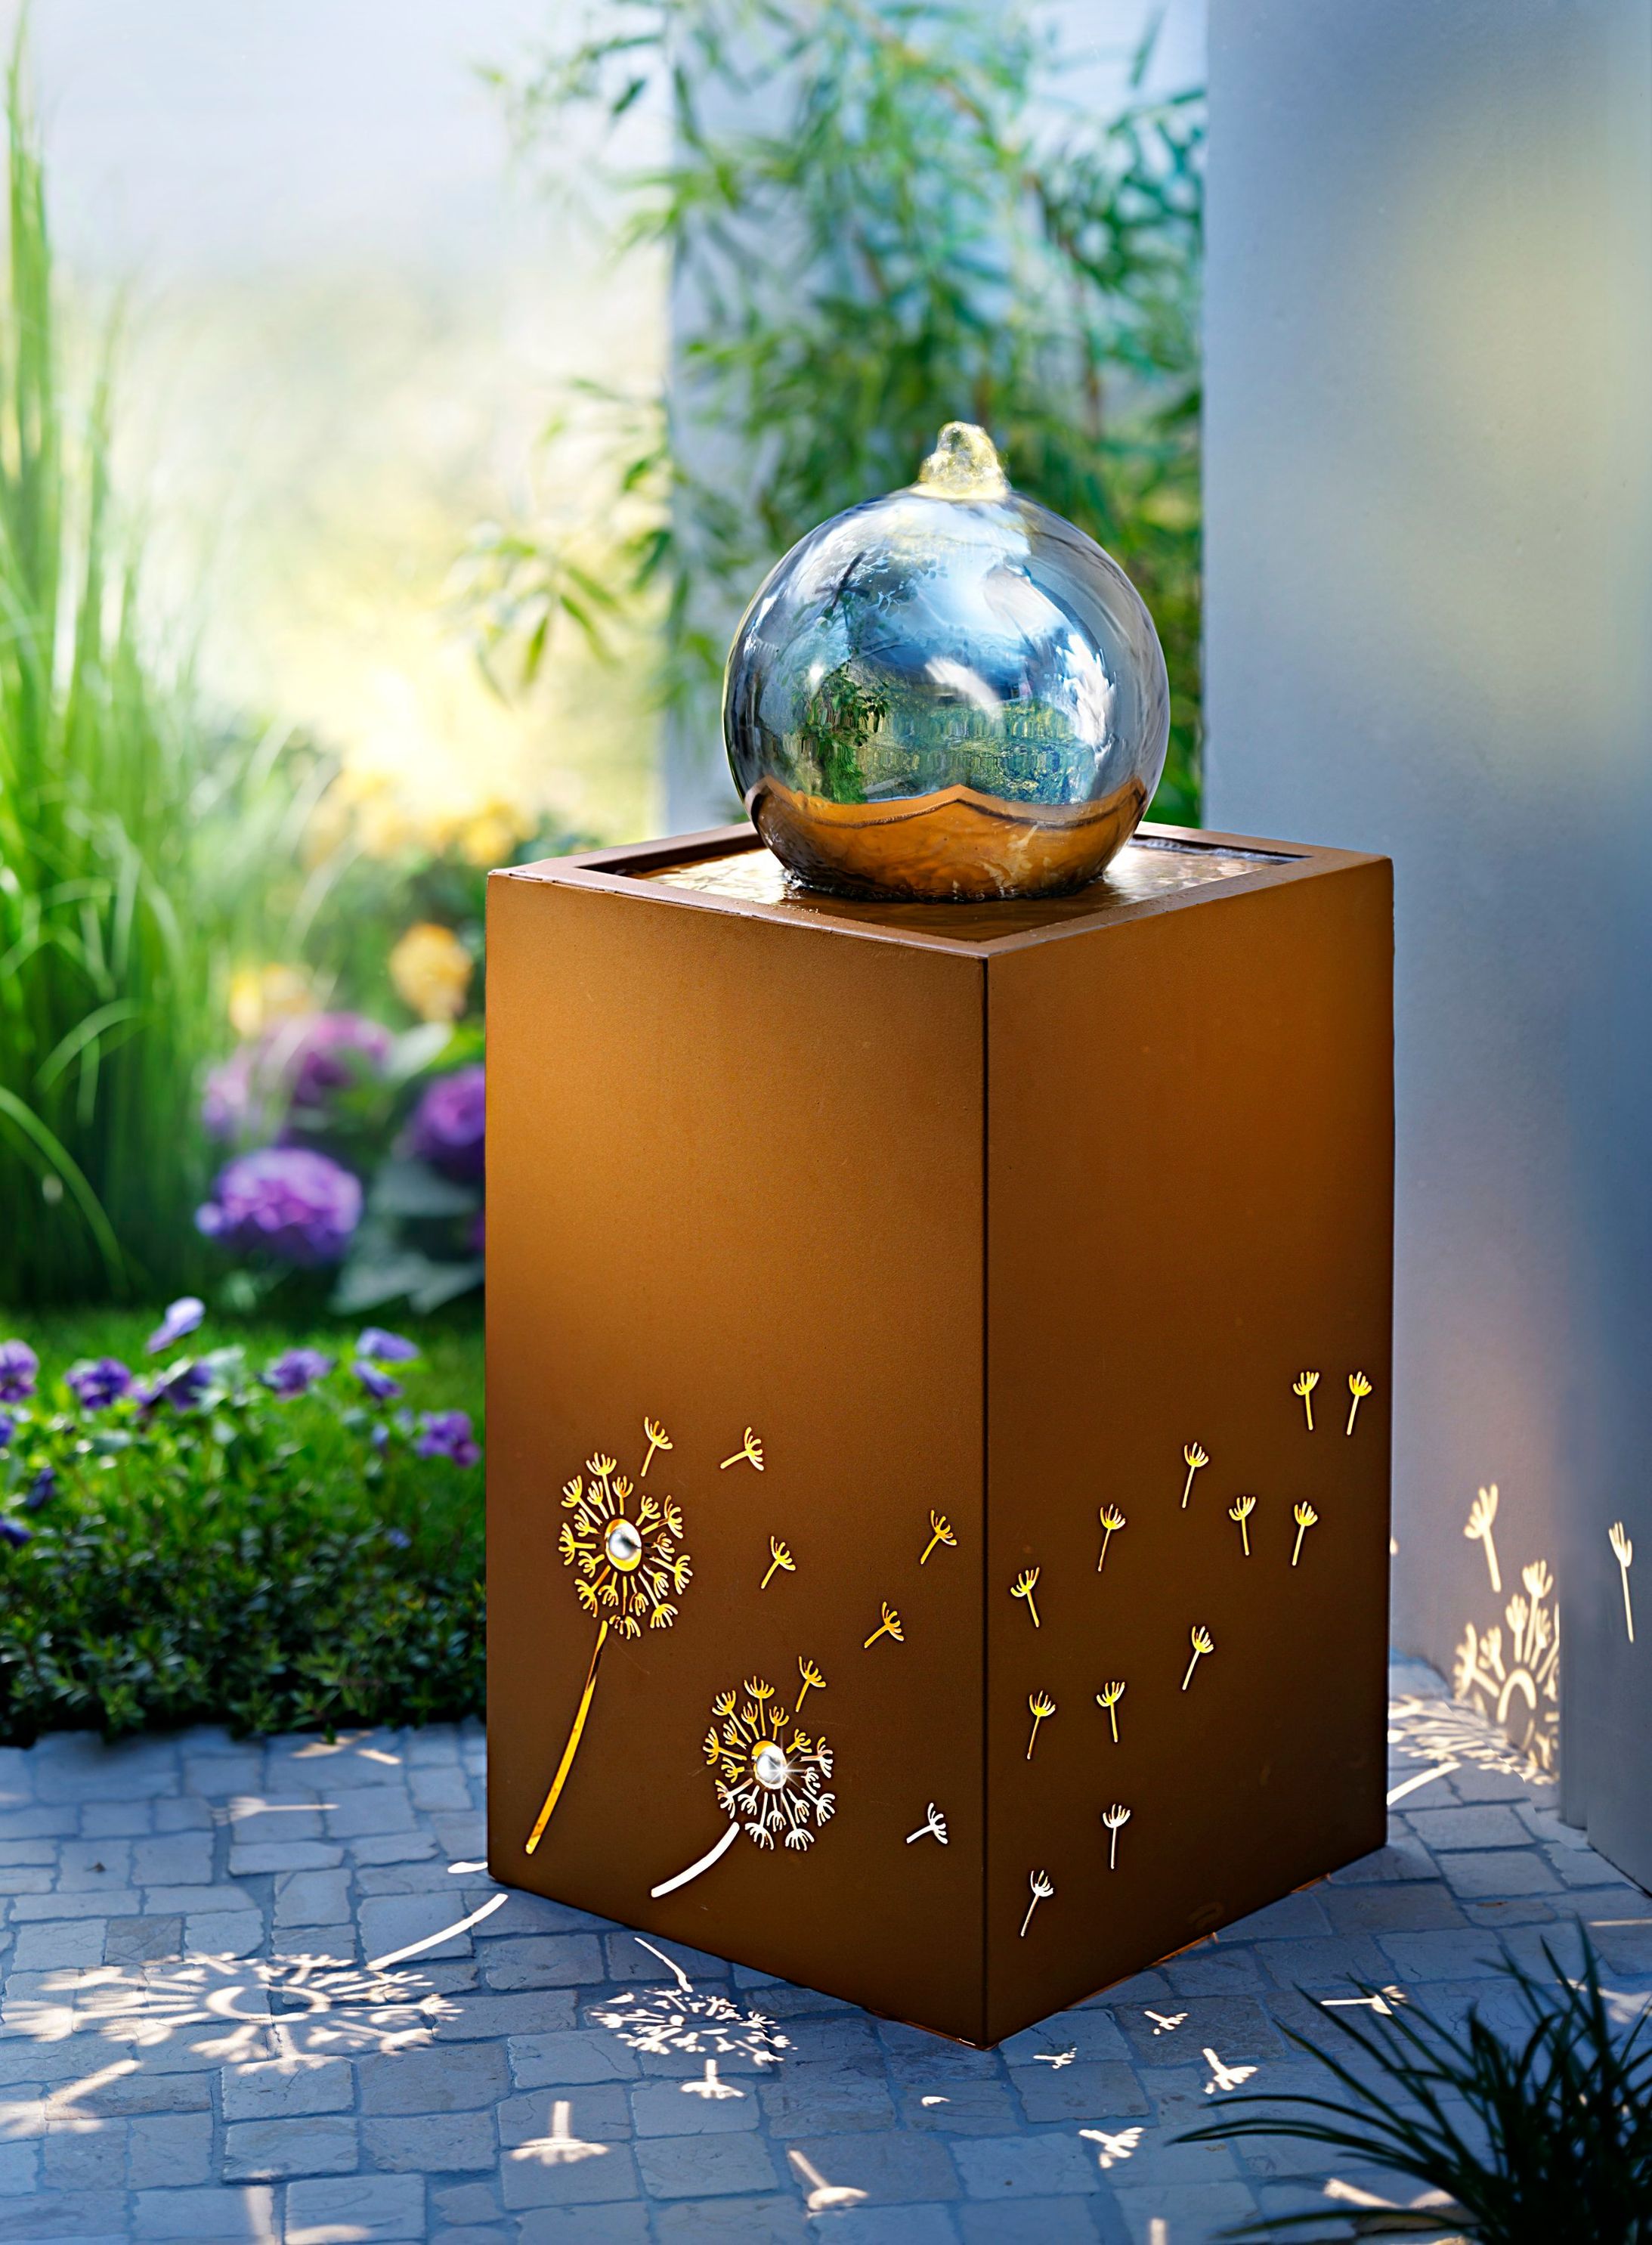 LED-Gartenbrunnen Pusteblume jetzt bei Weltbild.de bestellen